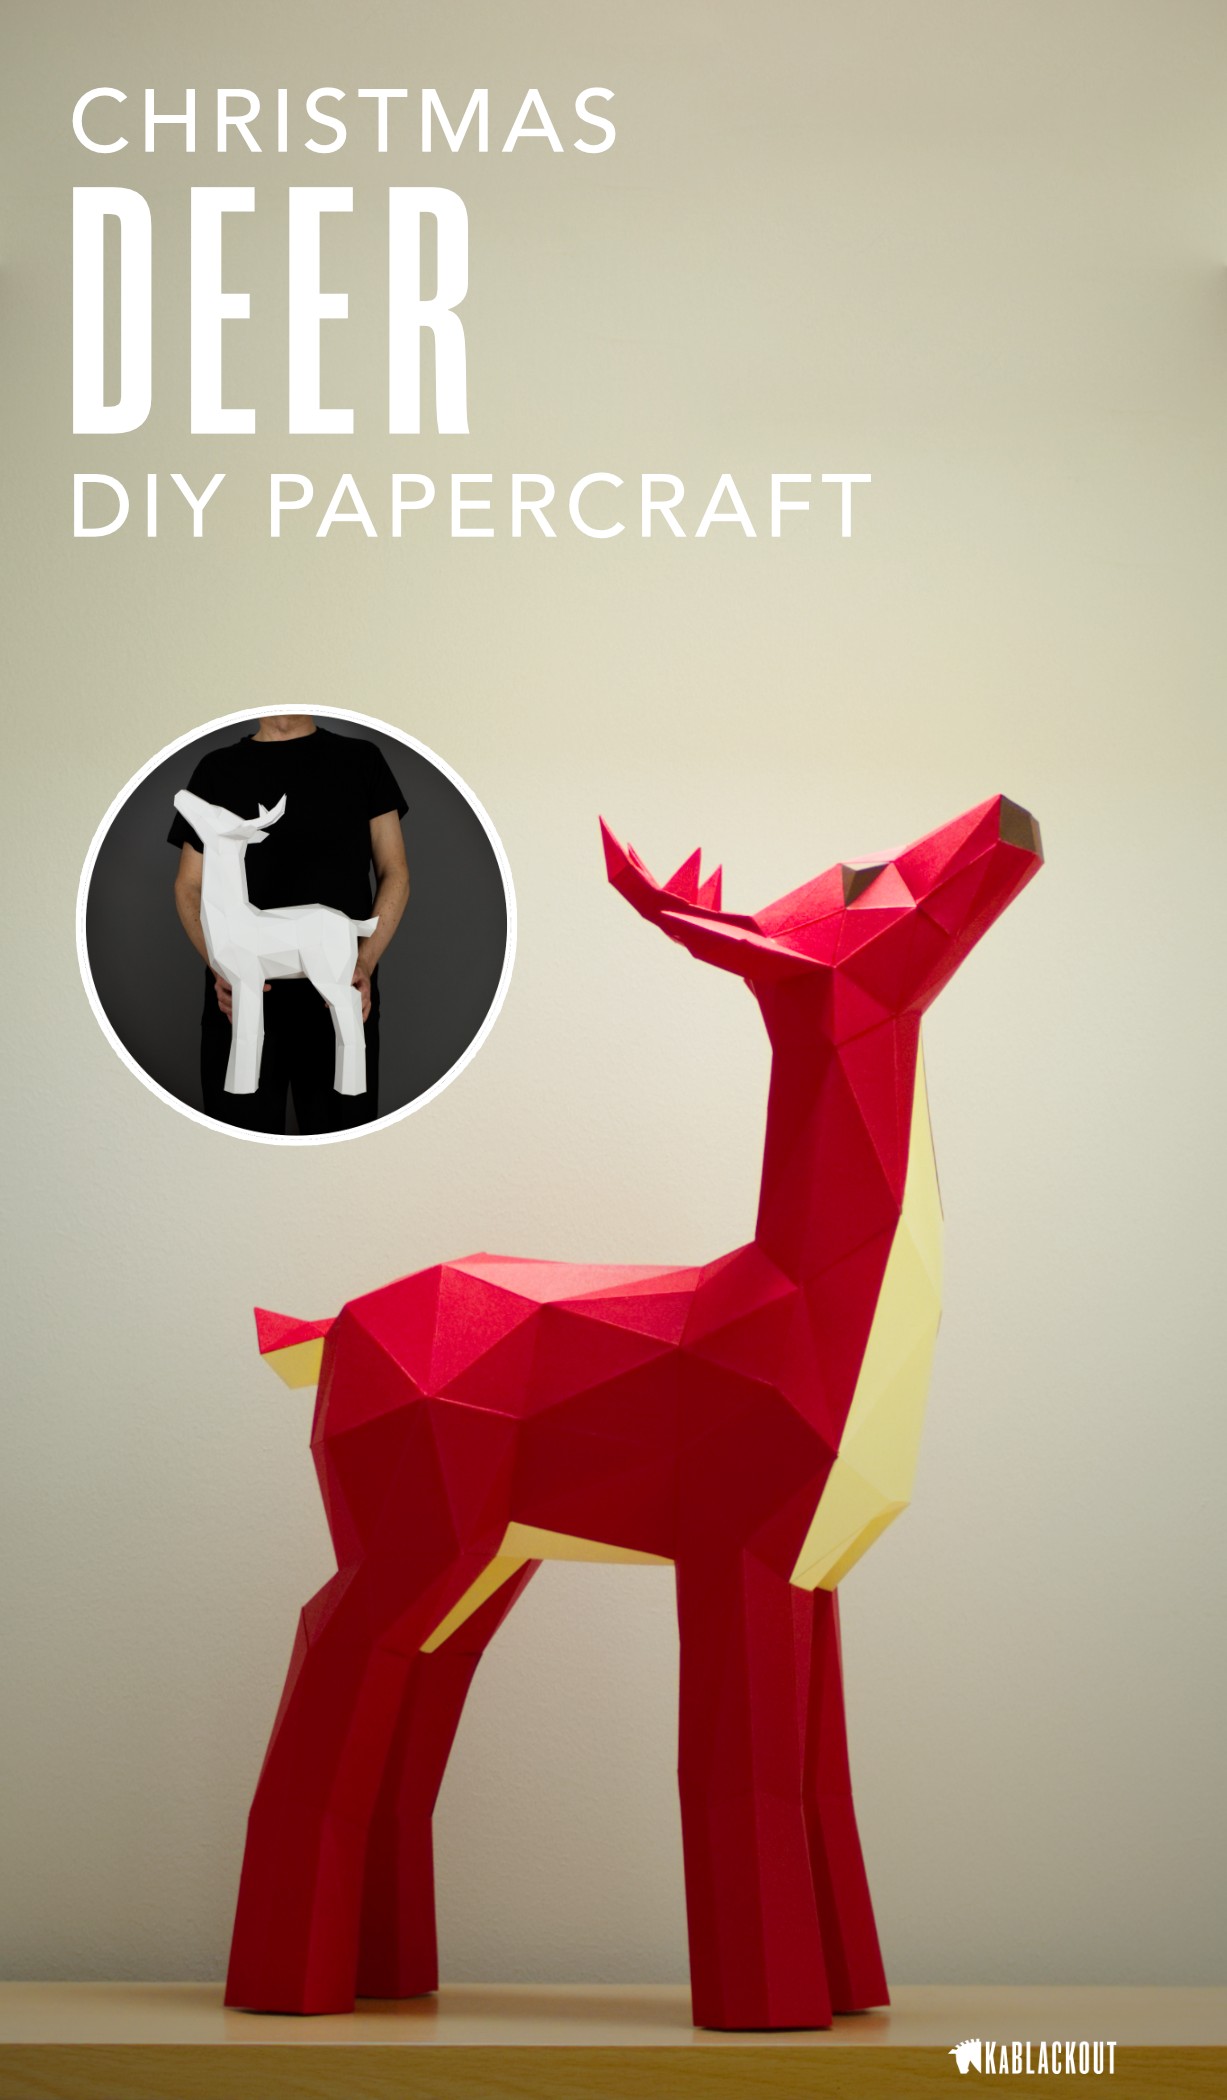 Papercraft Projects Deer Papercraft Papercraft Deer Diy Deer Low Poly Deer Deer